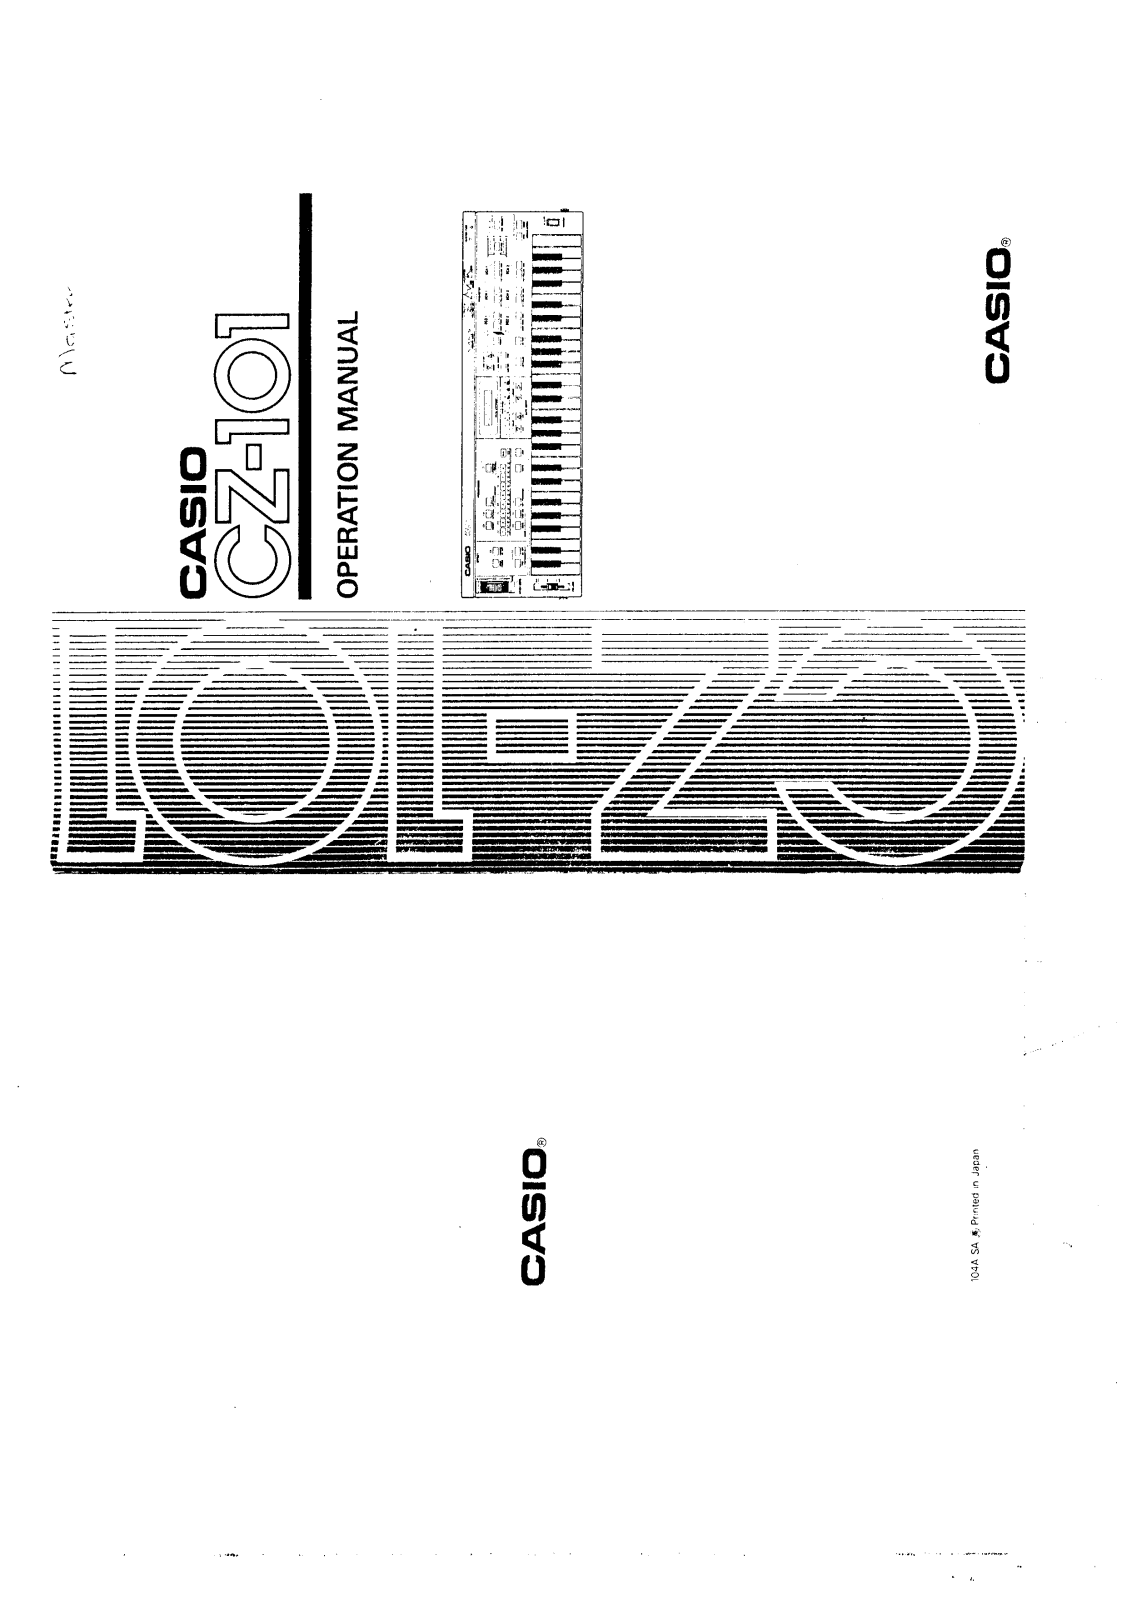 Casio CZ-101 User Manual